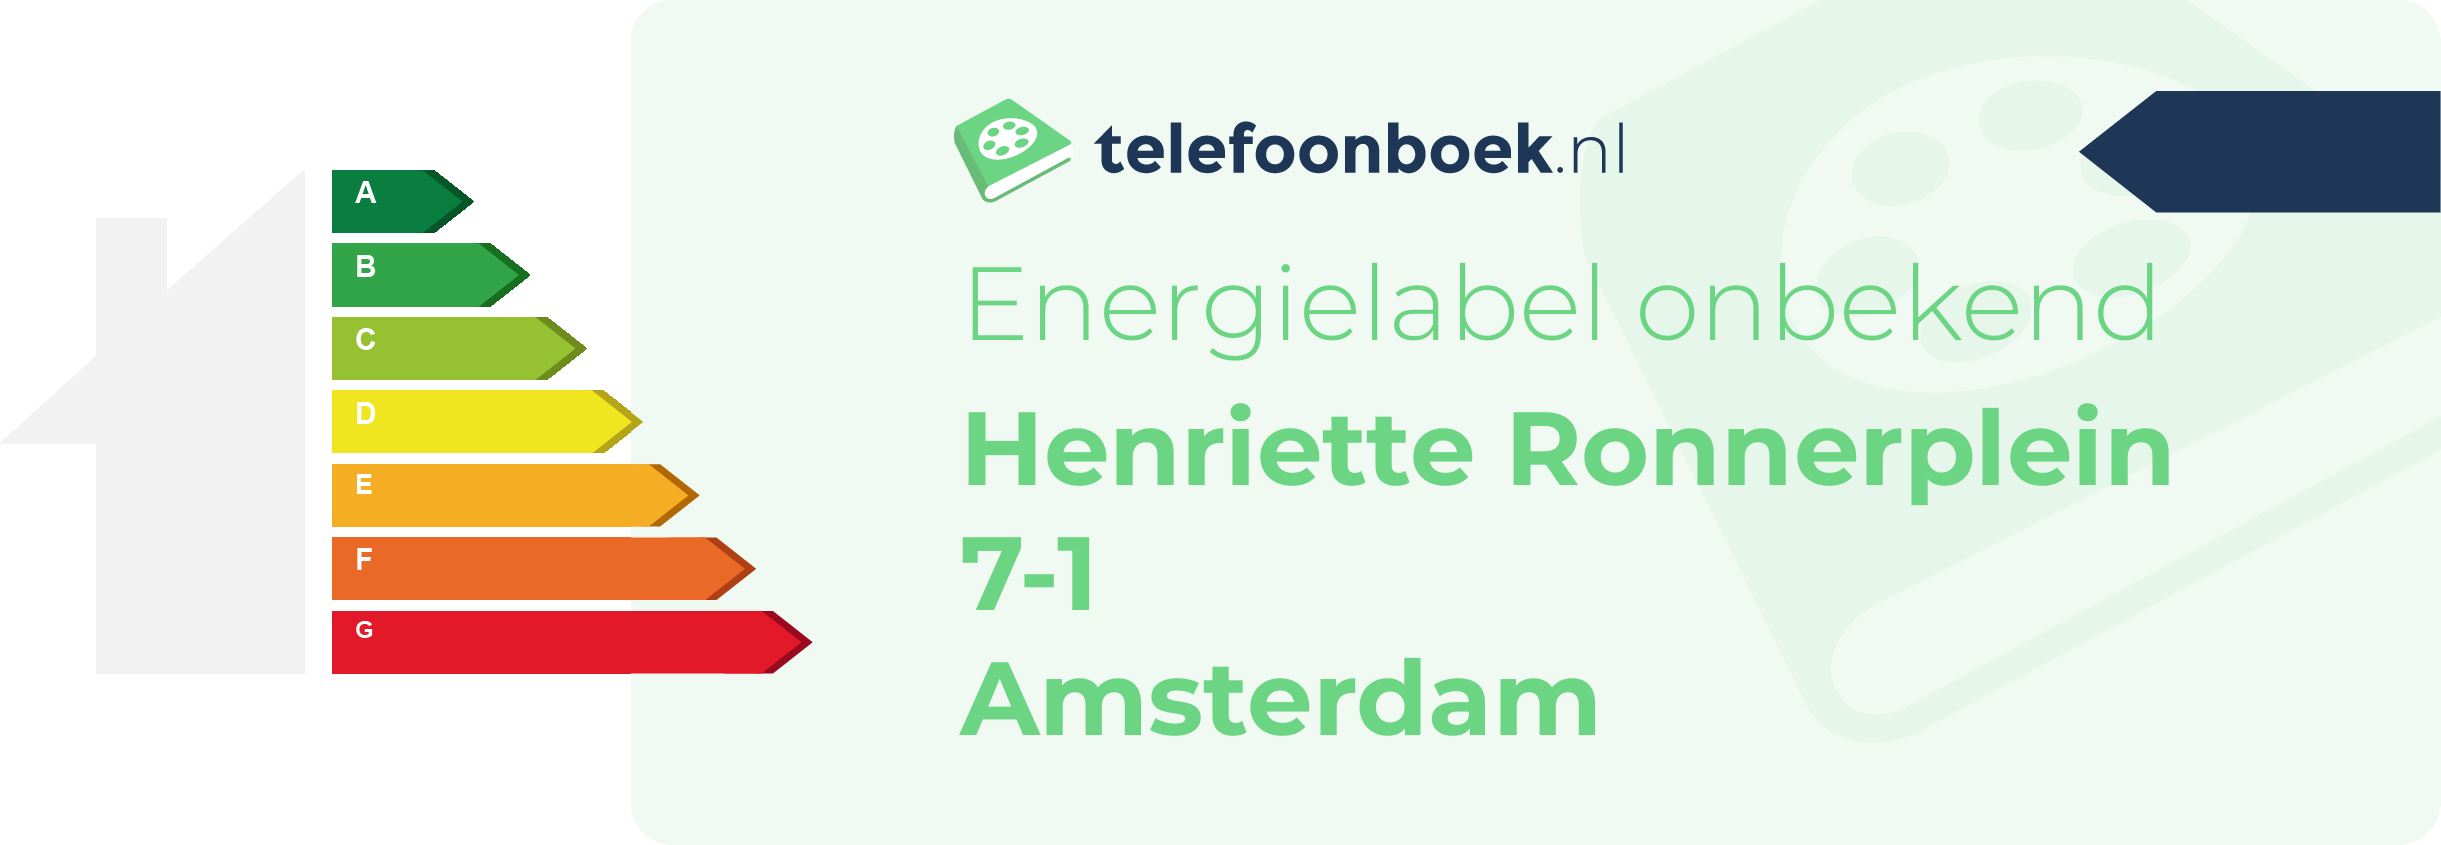 Energielabel Henriette Ronnerplein 7-1 Amsterdam